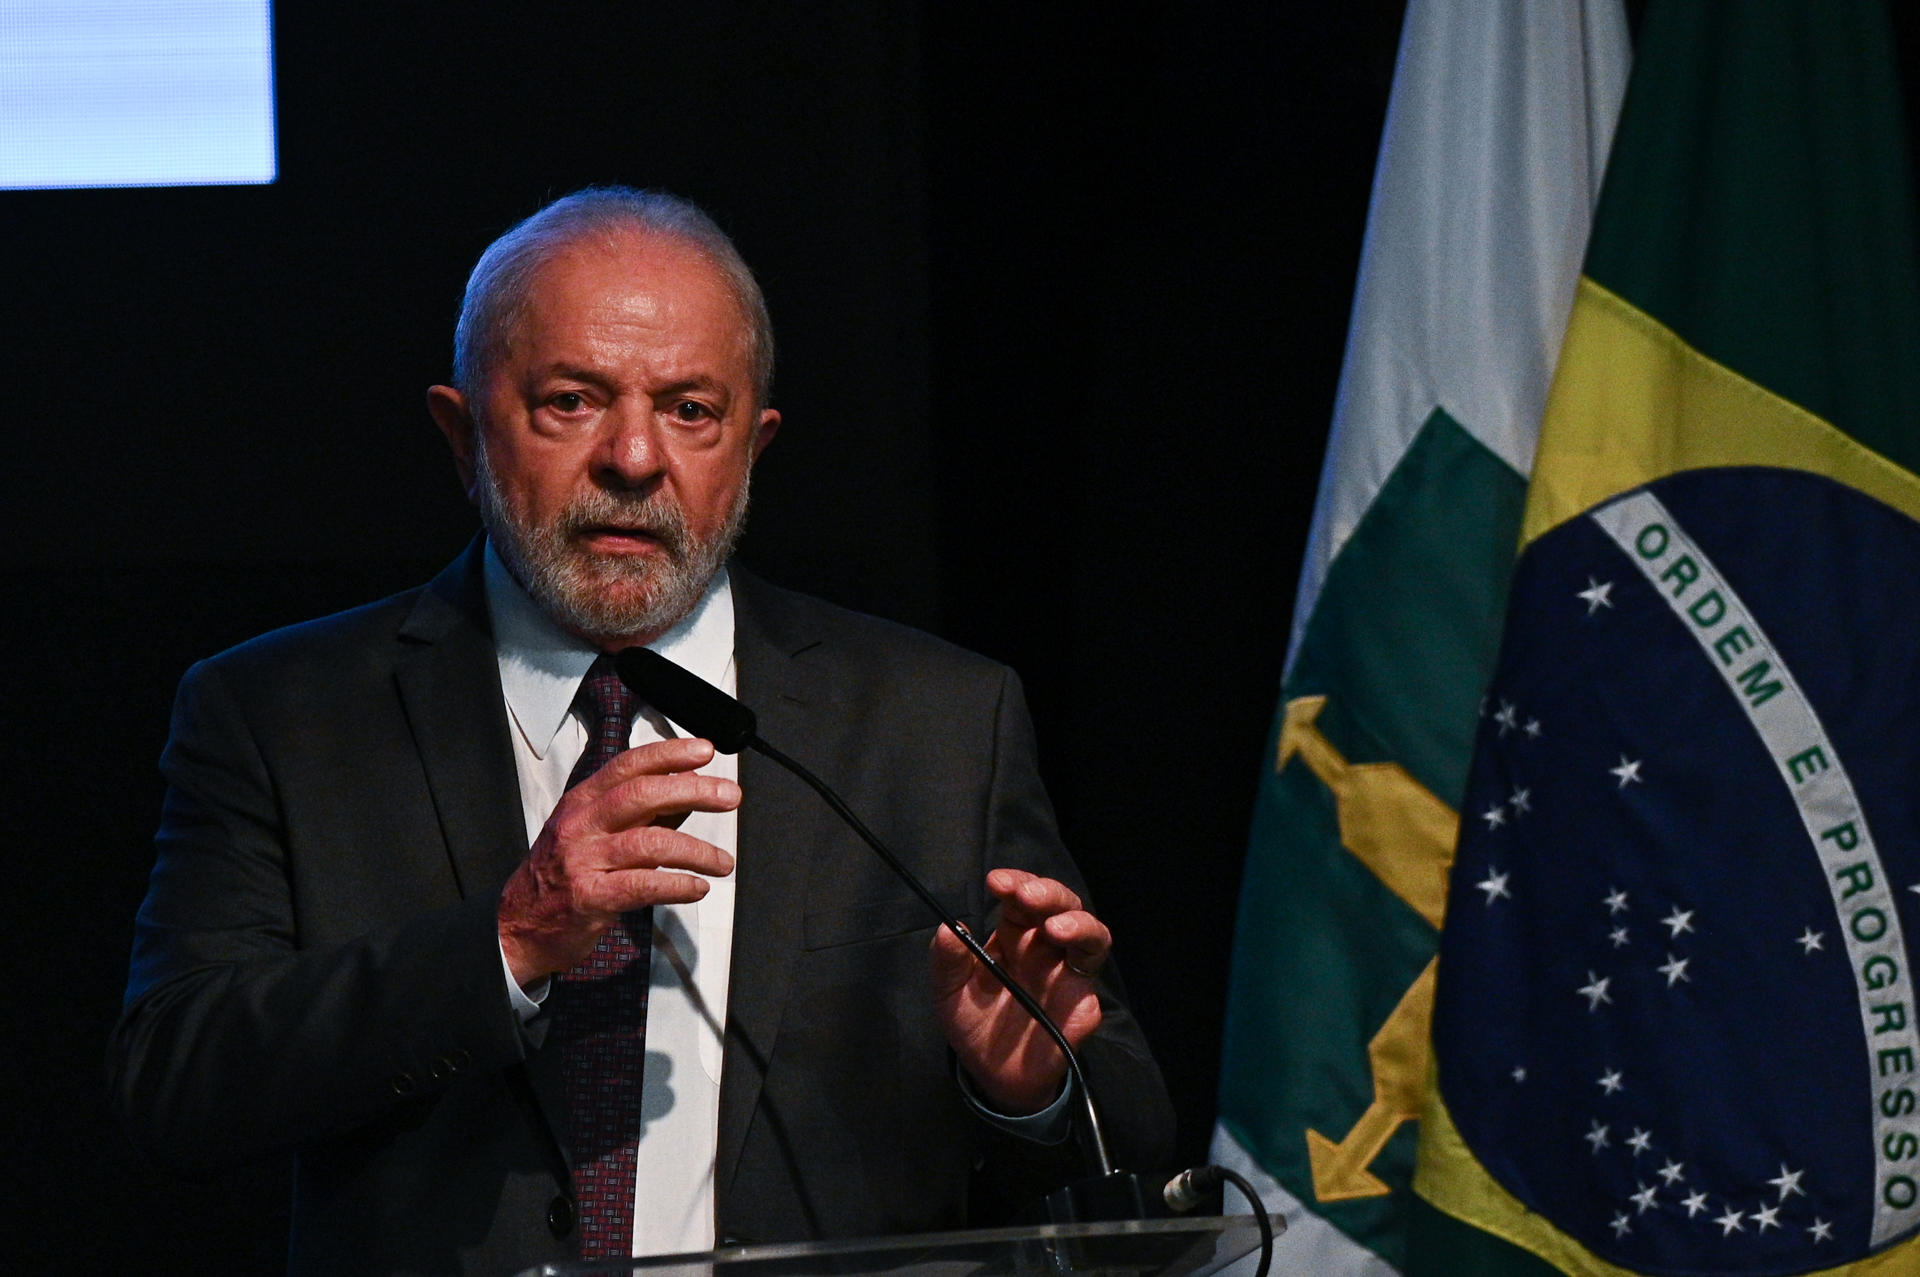 El presidente de Brasil, Luiz Inácio Lula da SIlva, participa en la toma de posesión del nuevo presidente del Banco do Brasil, Tarciana Medeiros, durante una ceremonia en Brasilia este 16 de enero de 2023. EFE/ Andre Borges